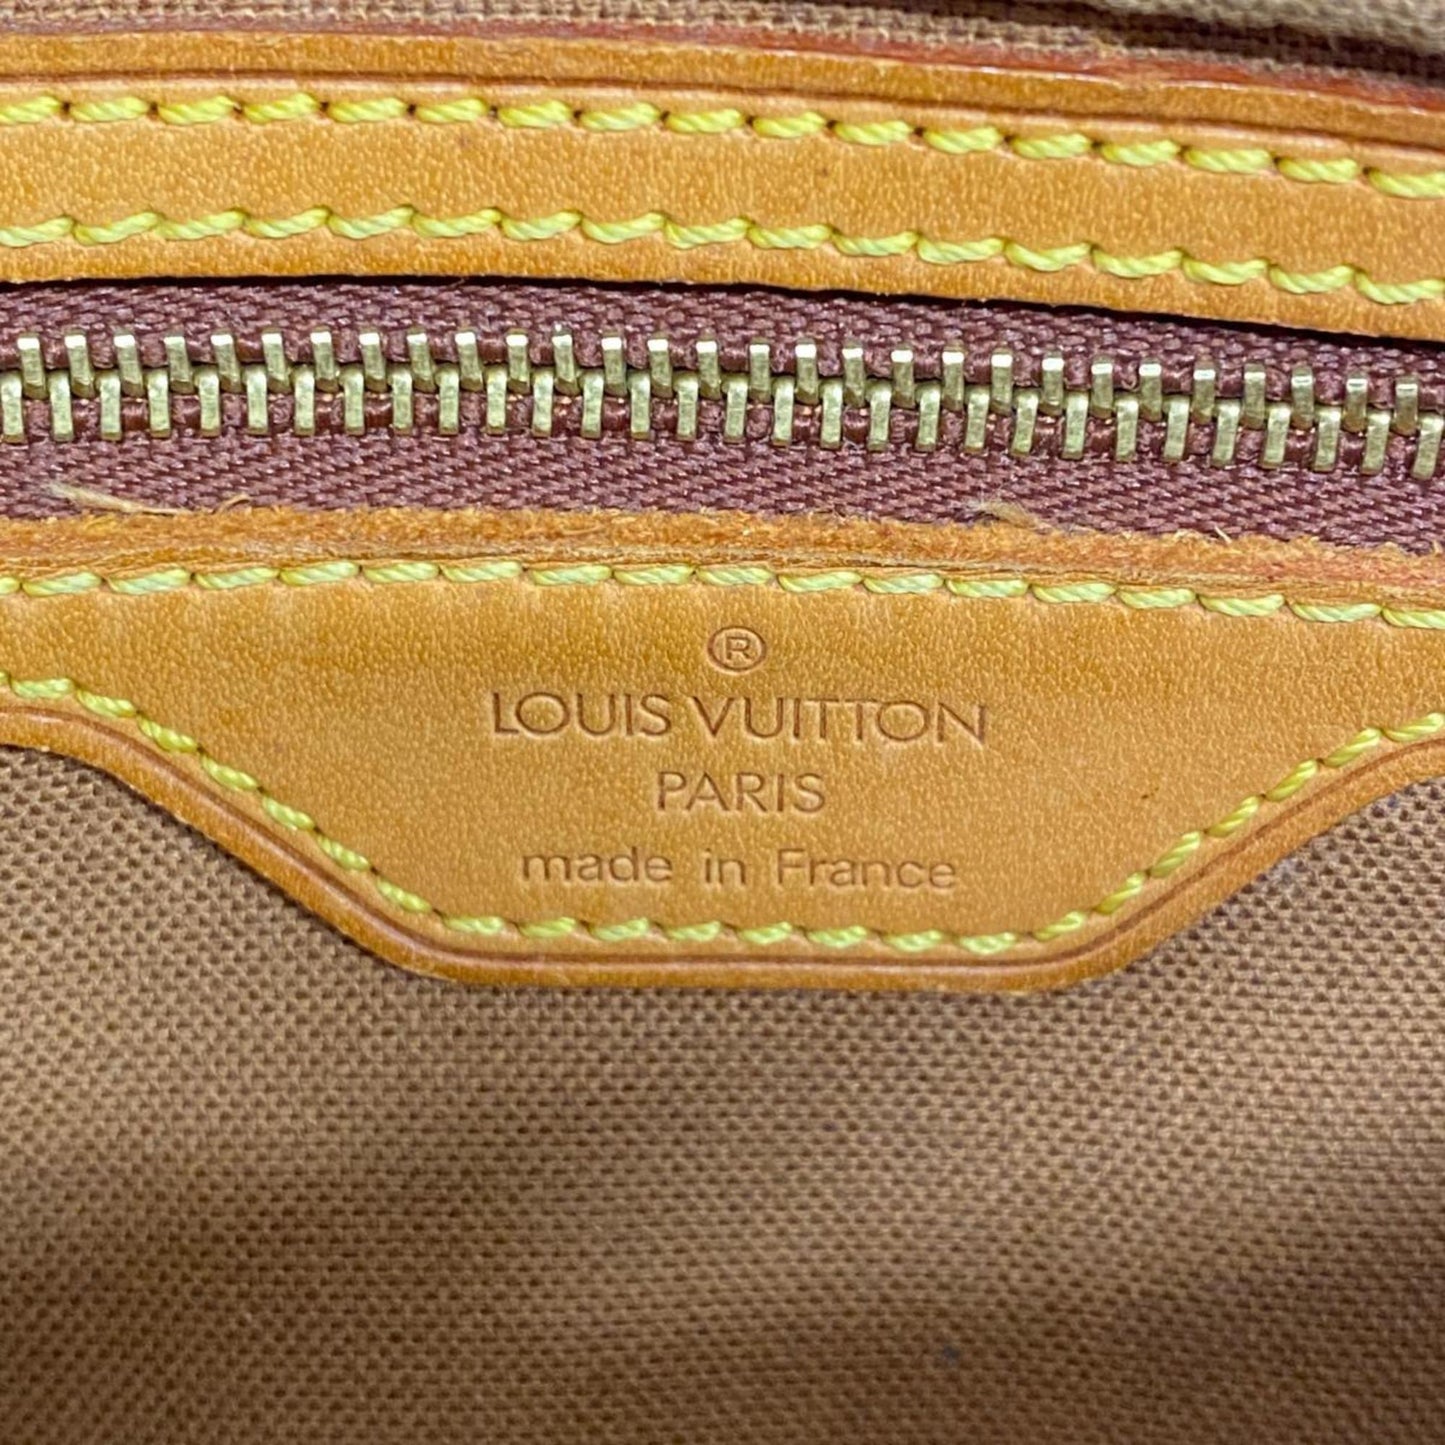 Louis Vuitton Trotteur Brown Canvas Shoulder Bag (Pre-Owned)